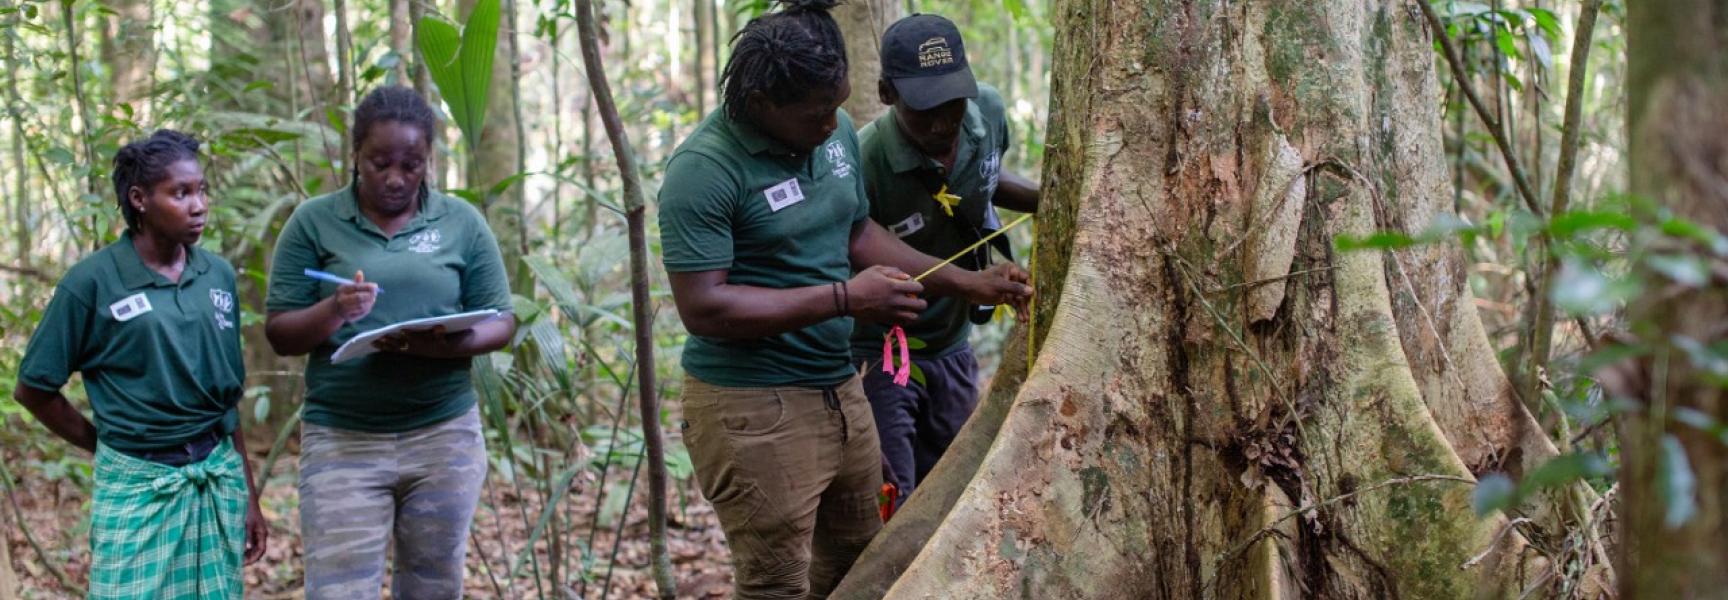 cuidadores de bosques examinando árboles en Suriname